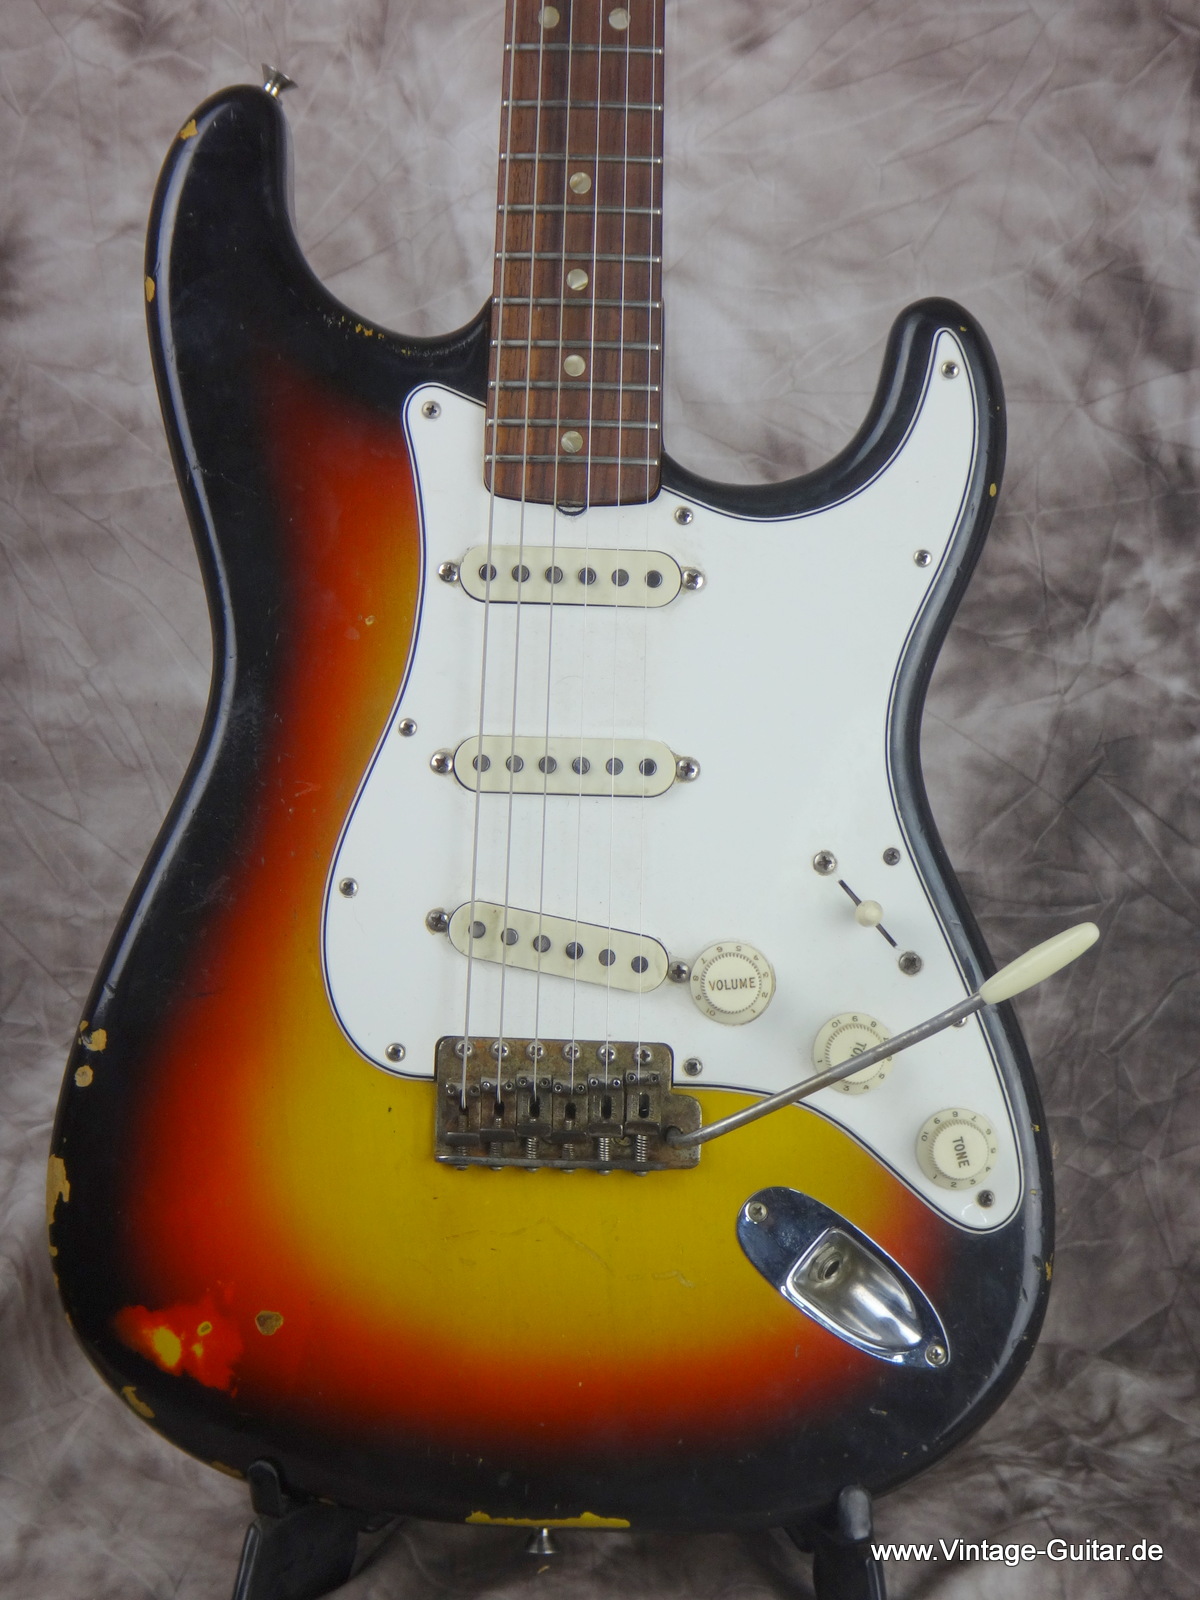 Fender_Stratocaster_1966_sunburst-black-bobbin-pickups-002.JPG